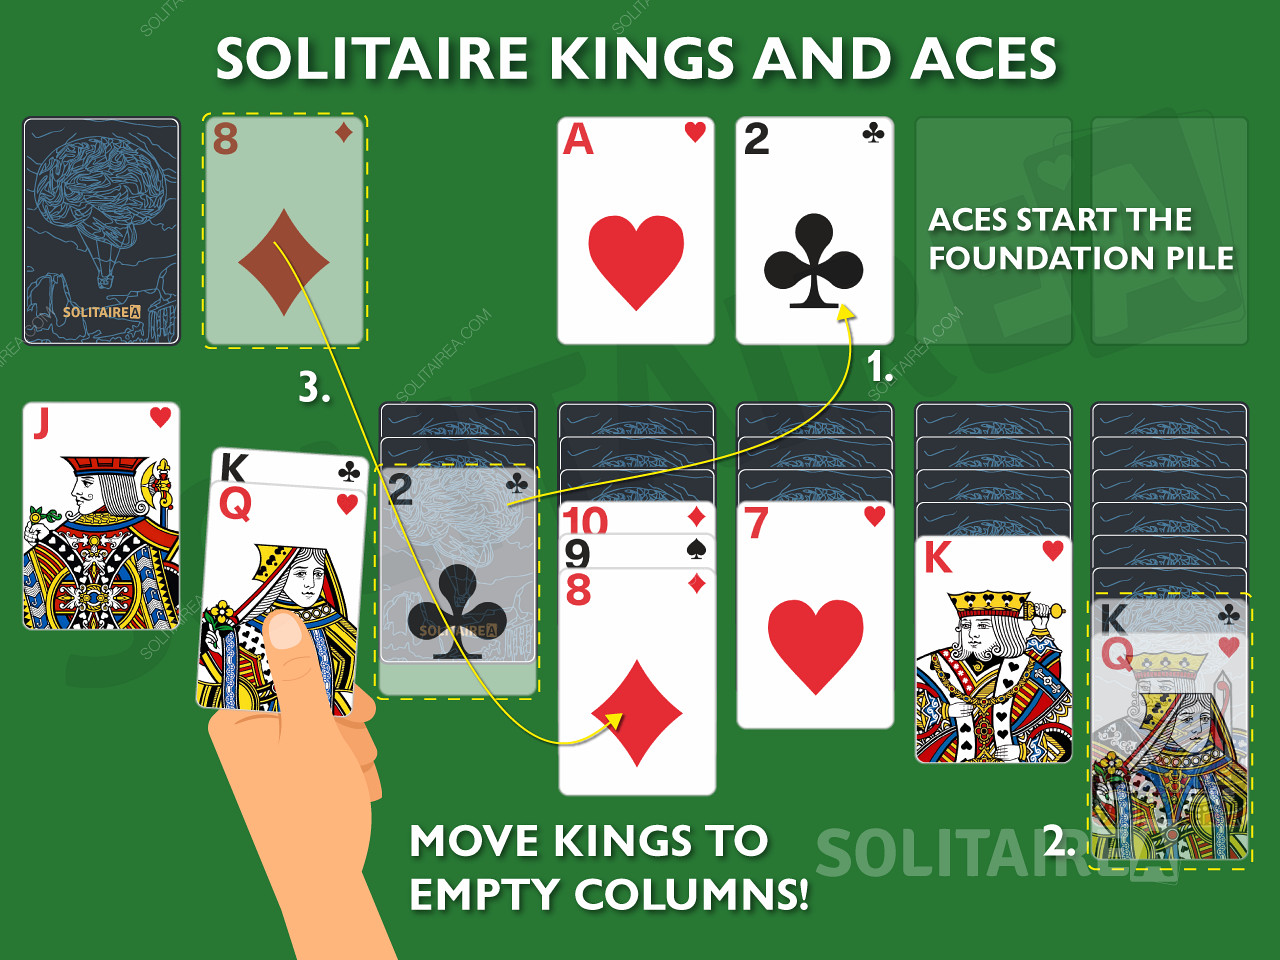 キングとエースは、ソリティアでは独自の動きが許される重要なカードです。